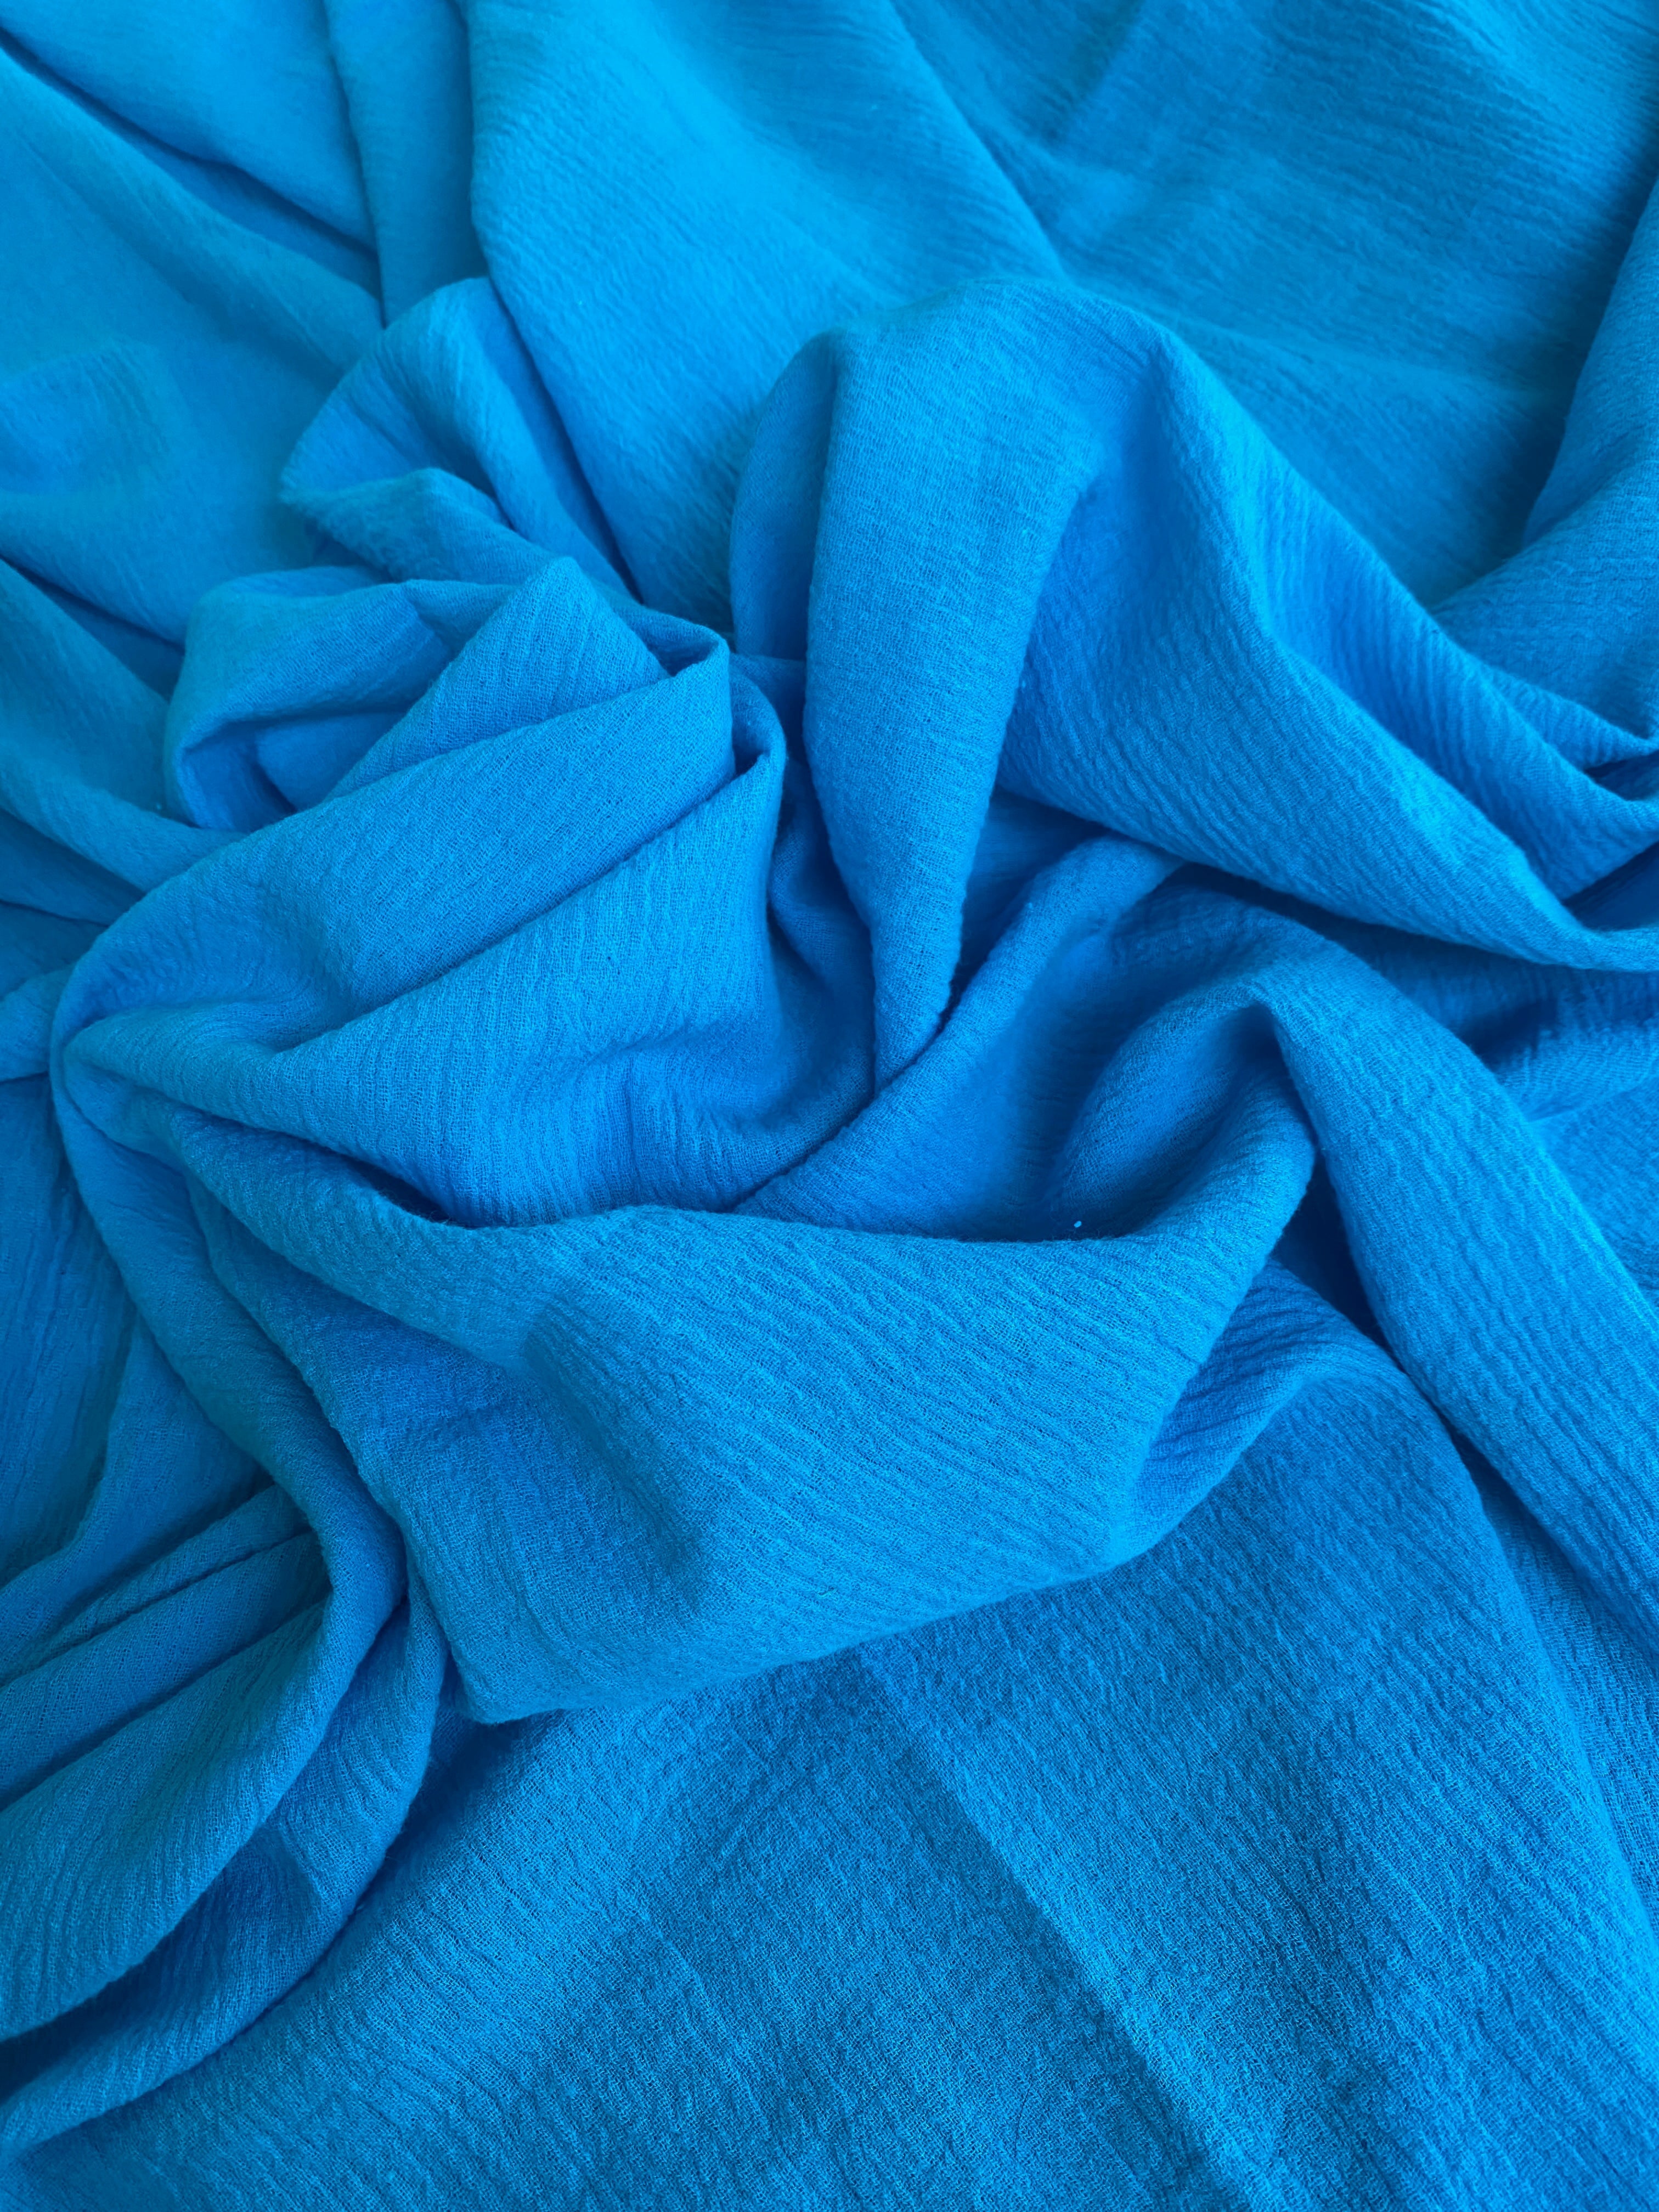 Turquoise linen gauze, dark blue linen gauze, blue linen gauze, linen gauze for woman, linen gauze for bride, linen gauze in low price, premium linen gauze